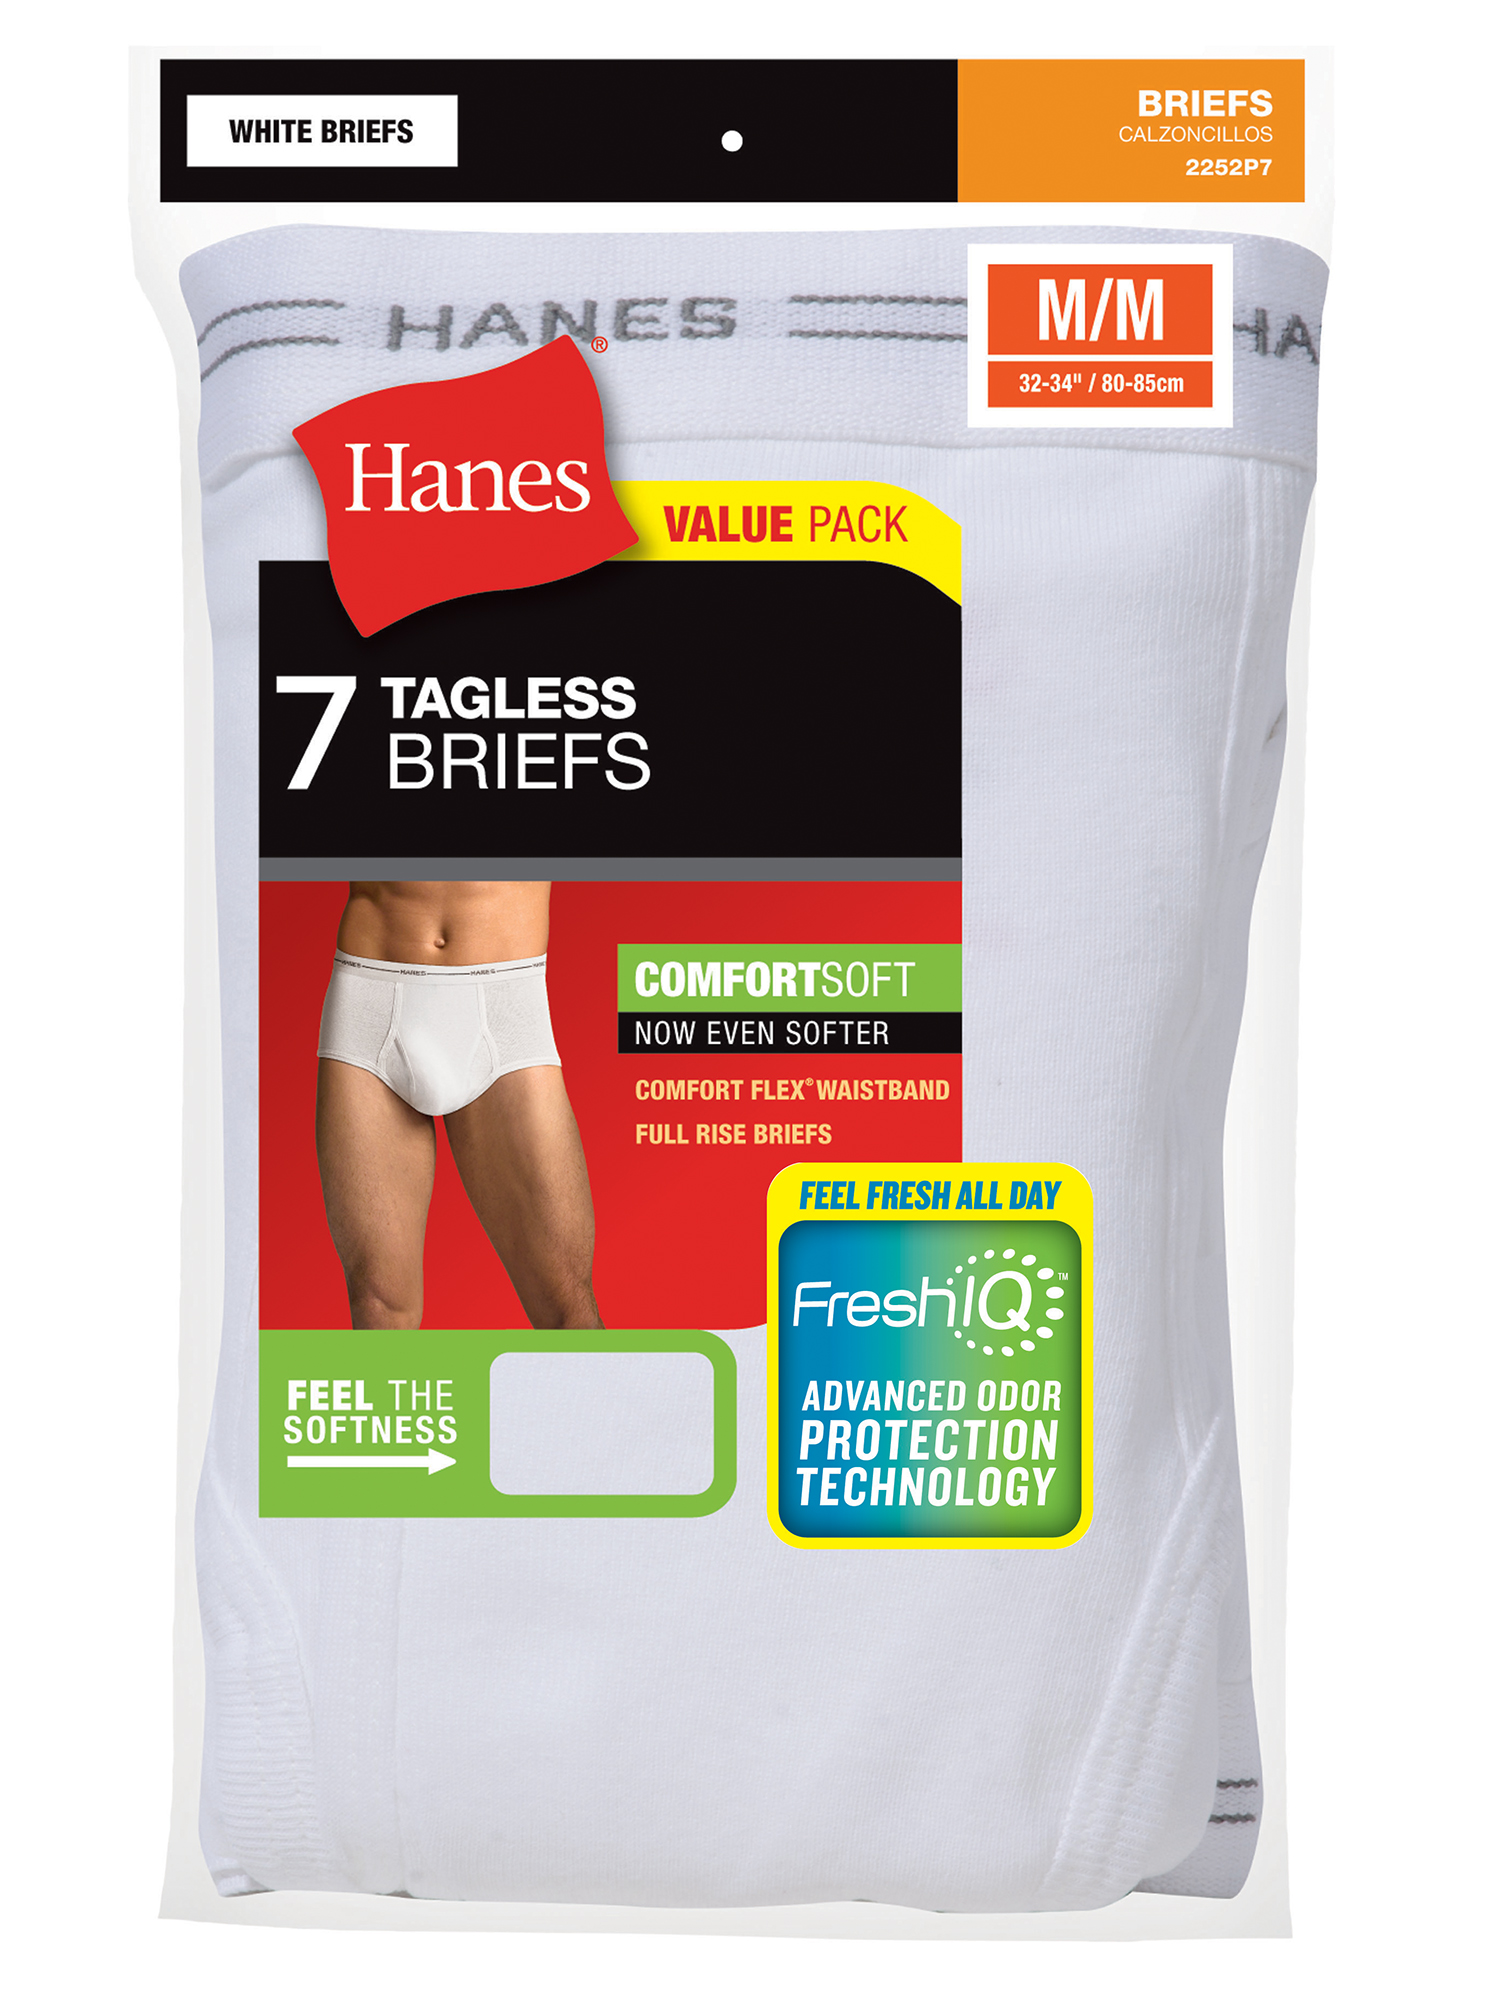 Men's FreshIQ Comfort Flex Waistband White Briefs, 7 Pack, Size S-3XL - image 5 of 5